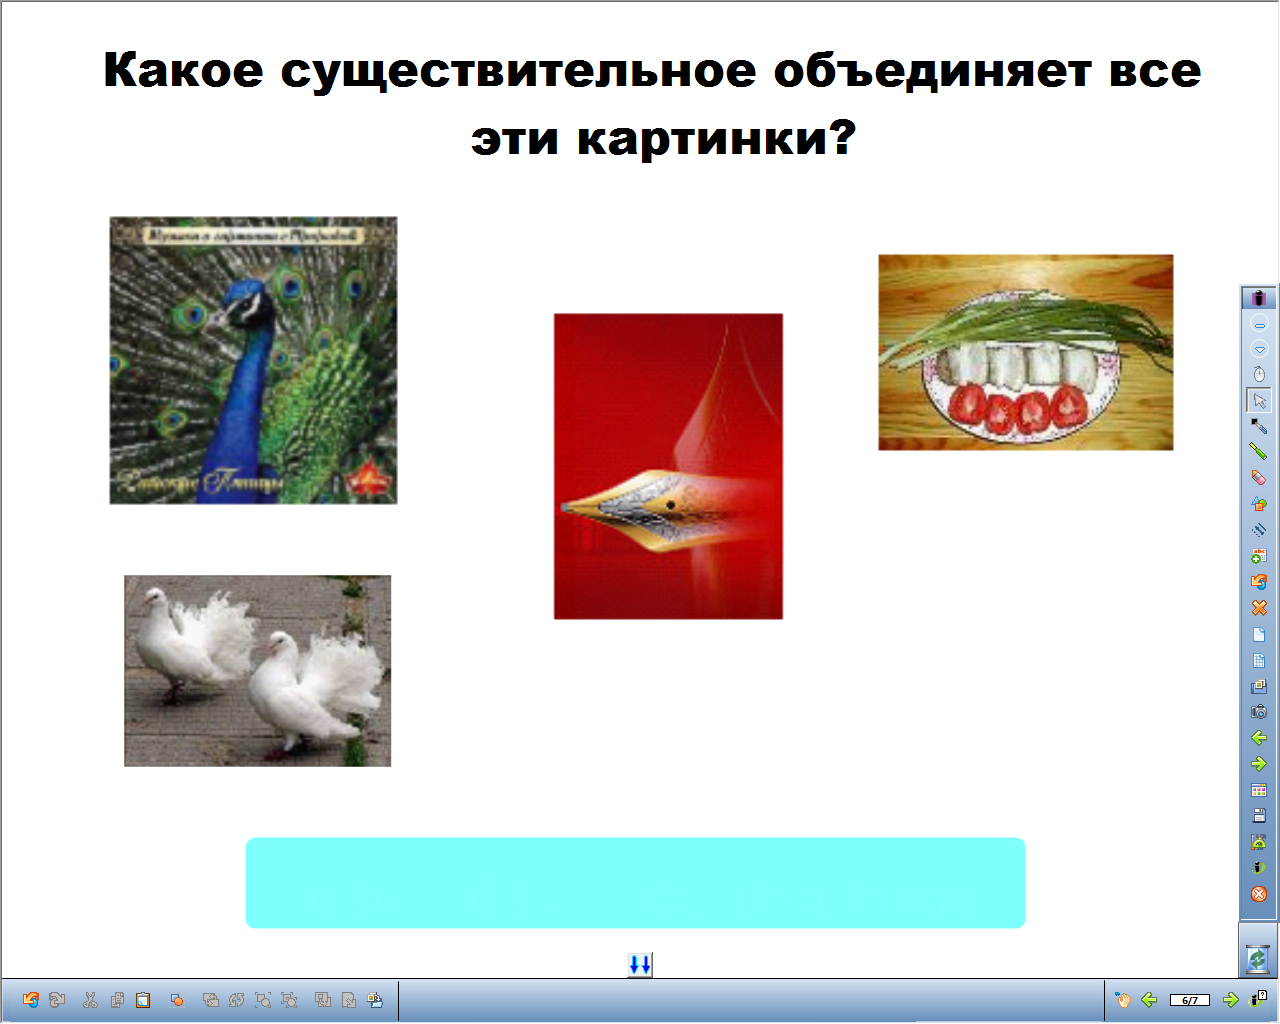 Урок по русскому языку на тему Что такое существительное? (3 класс) с применением интерактивной доски.